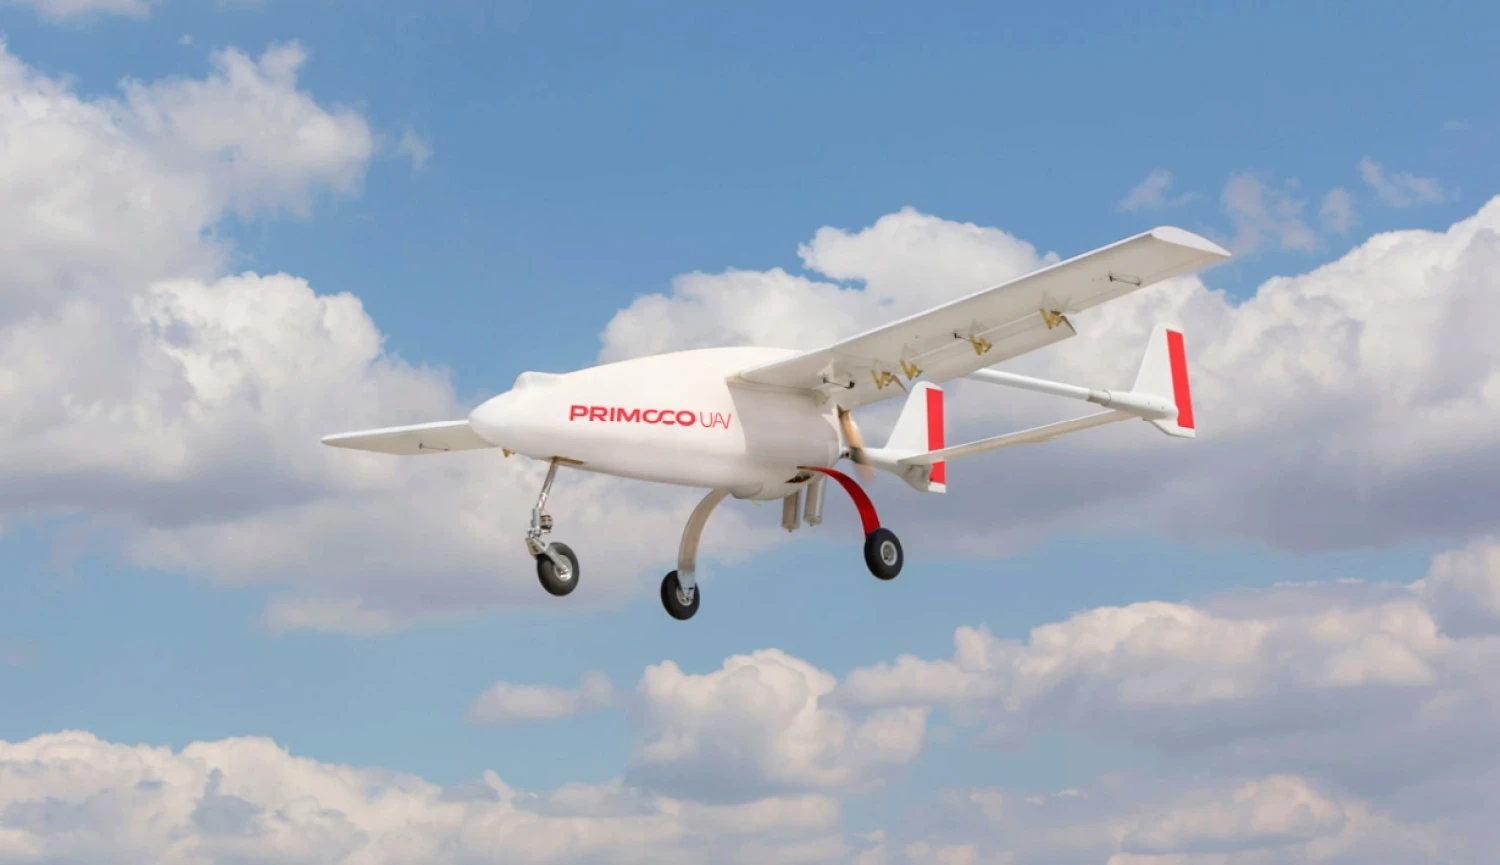 Primoco letí do Asie. Český výrobce dronů tam dodá zařízení za desítky milionů